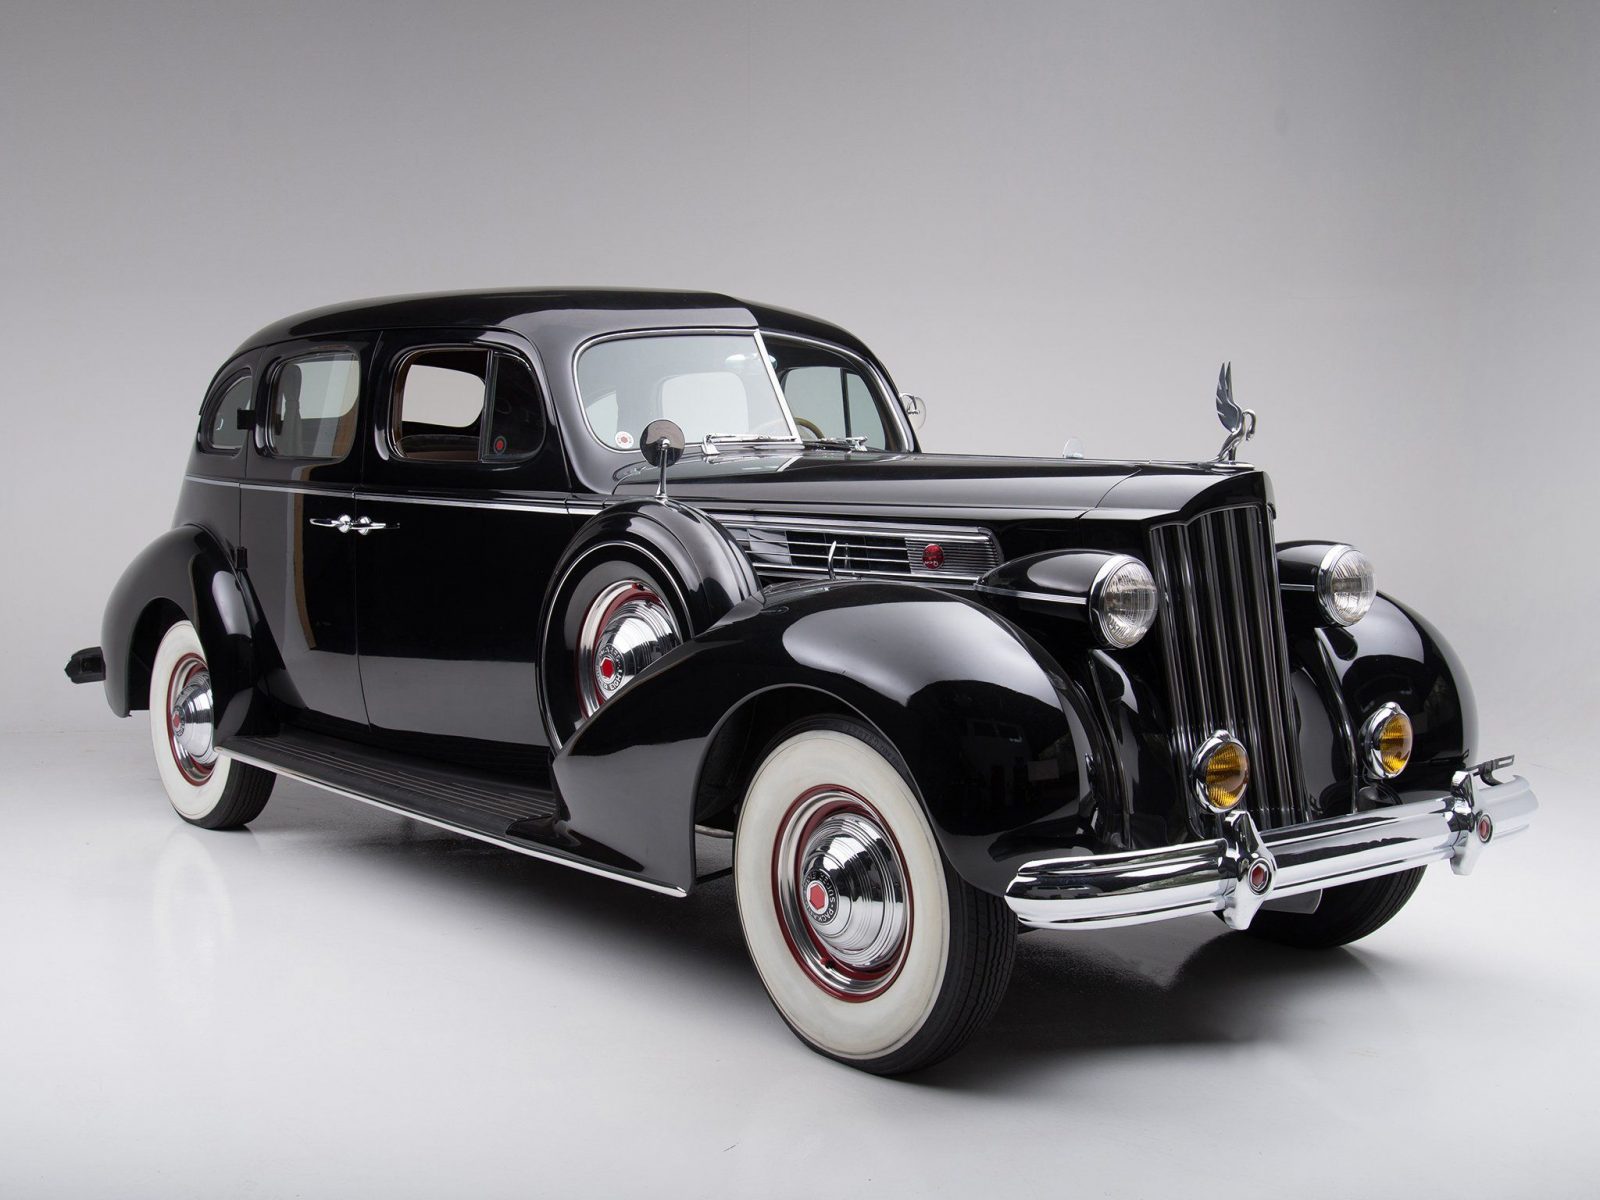 4 novembre 1939 – Packard offre la première voiture climatisée